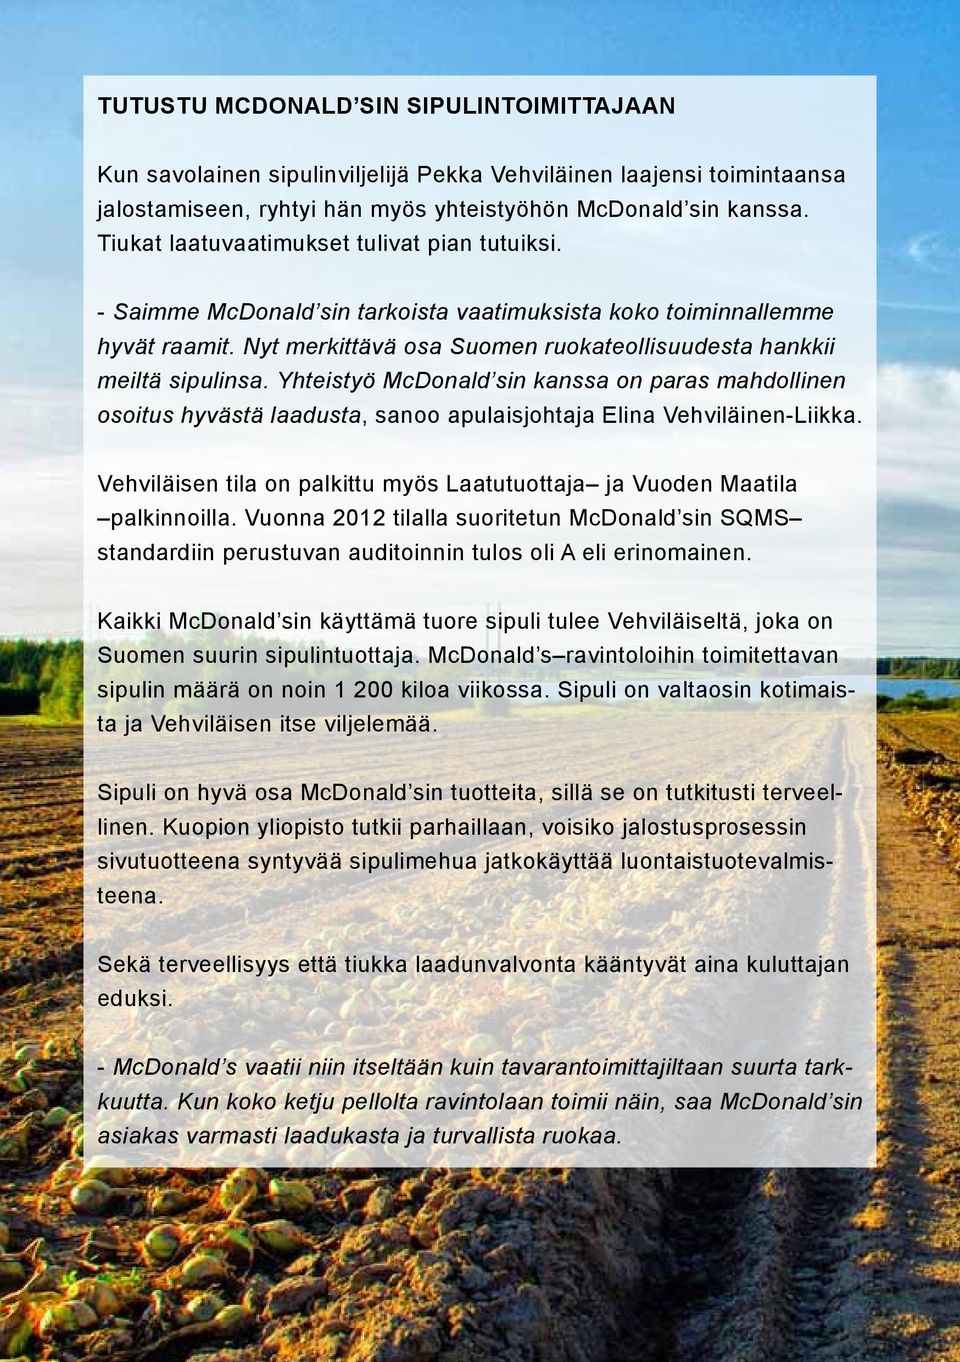 Yhteistyö McDonald sin kanssa on paras mahdollinen osoitus hyvästä laadusta, sanoo apulaisjohtaja Elina Vehviläinen-Liikka.